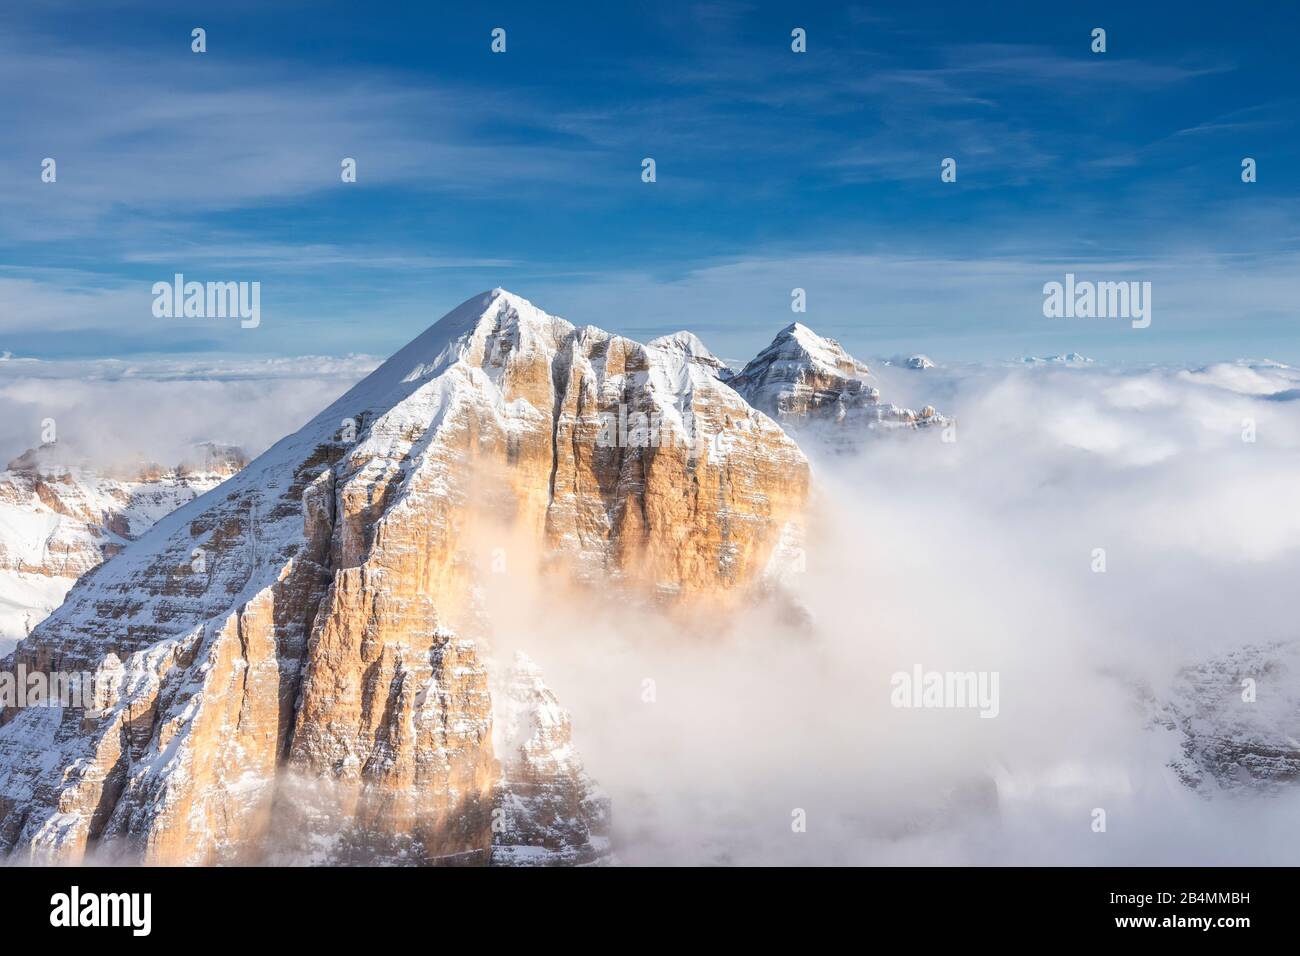 Cortina d'Ampezzo, Provinz Belluno, Venetien, Italien, Europa. Luftbildaufnahme der drei Tofana-Gipfel Stock Photo